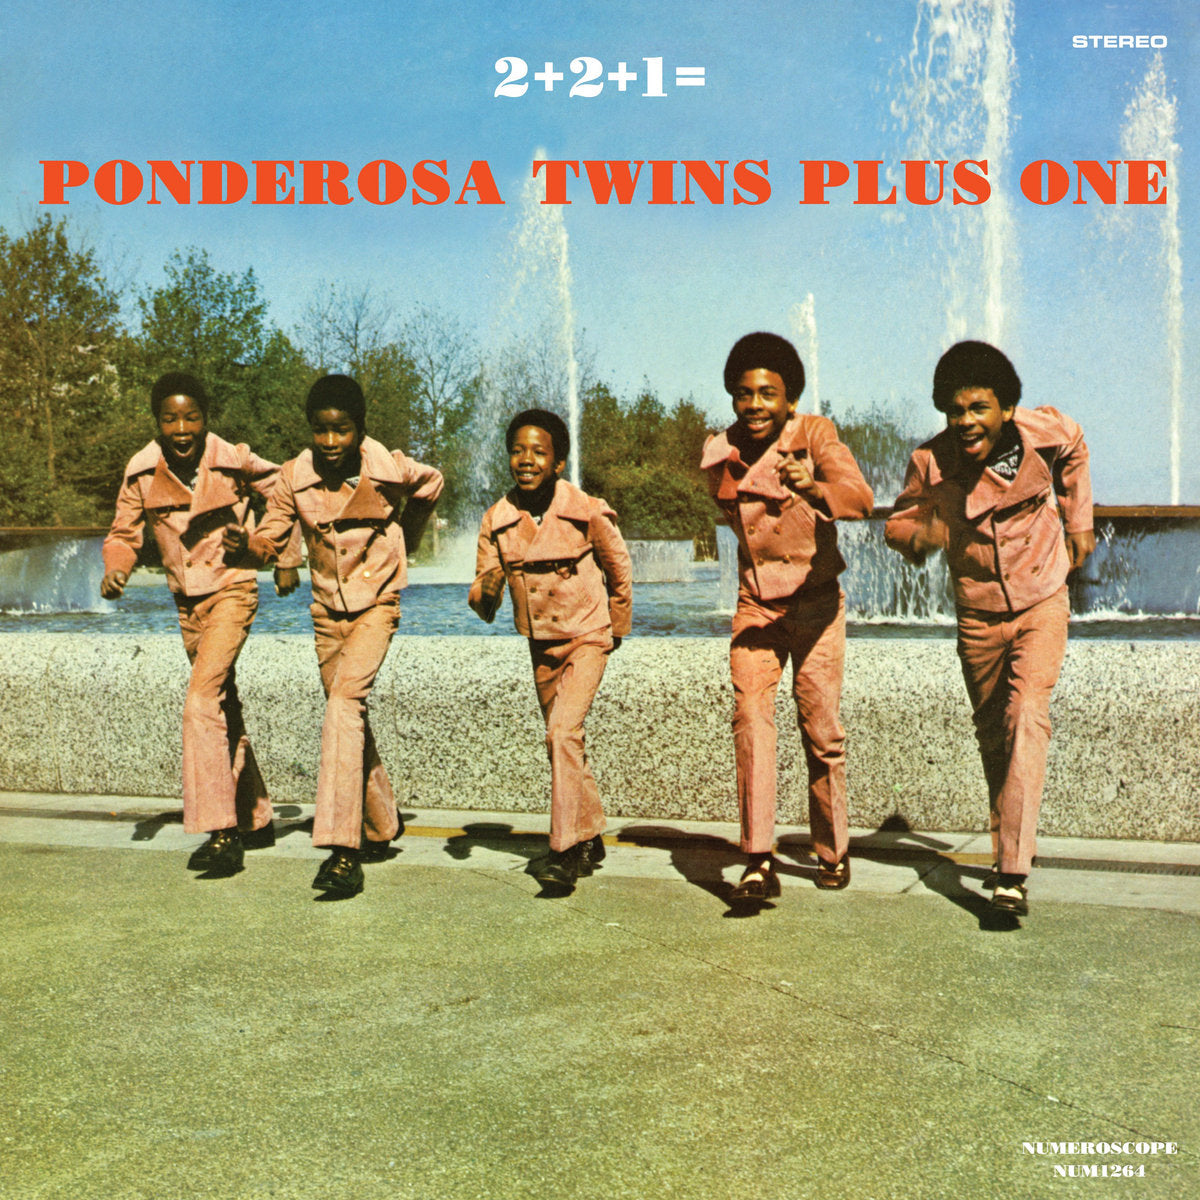 PONDEROSA TWINS PLUS ONE '2+2+1'